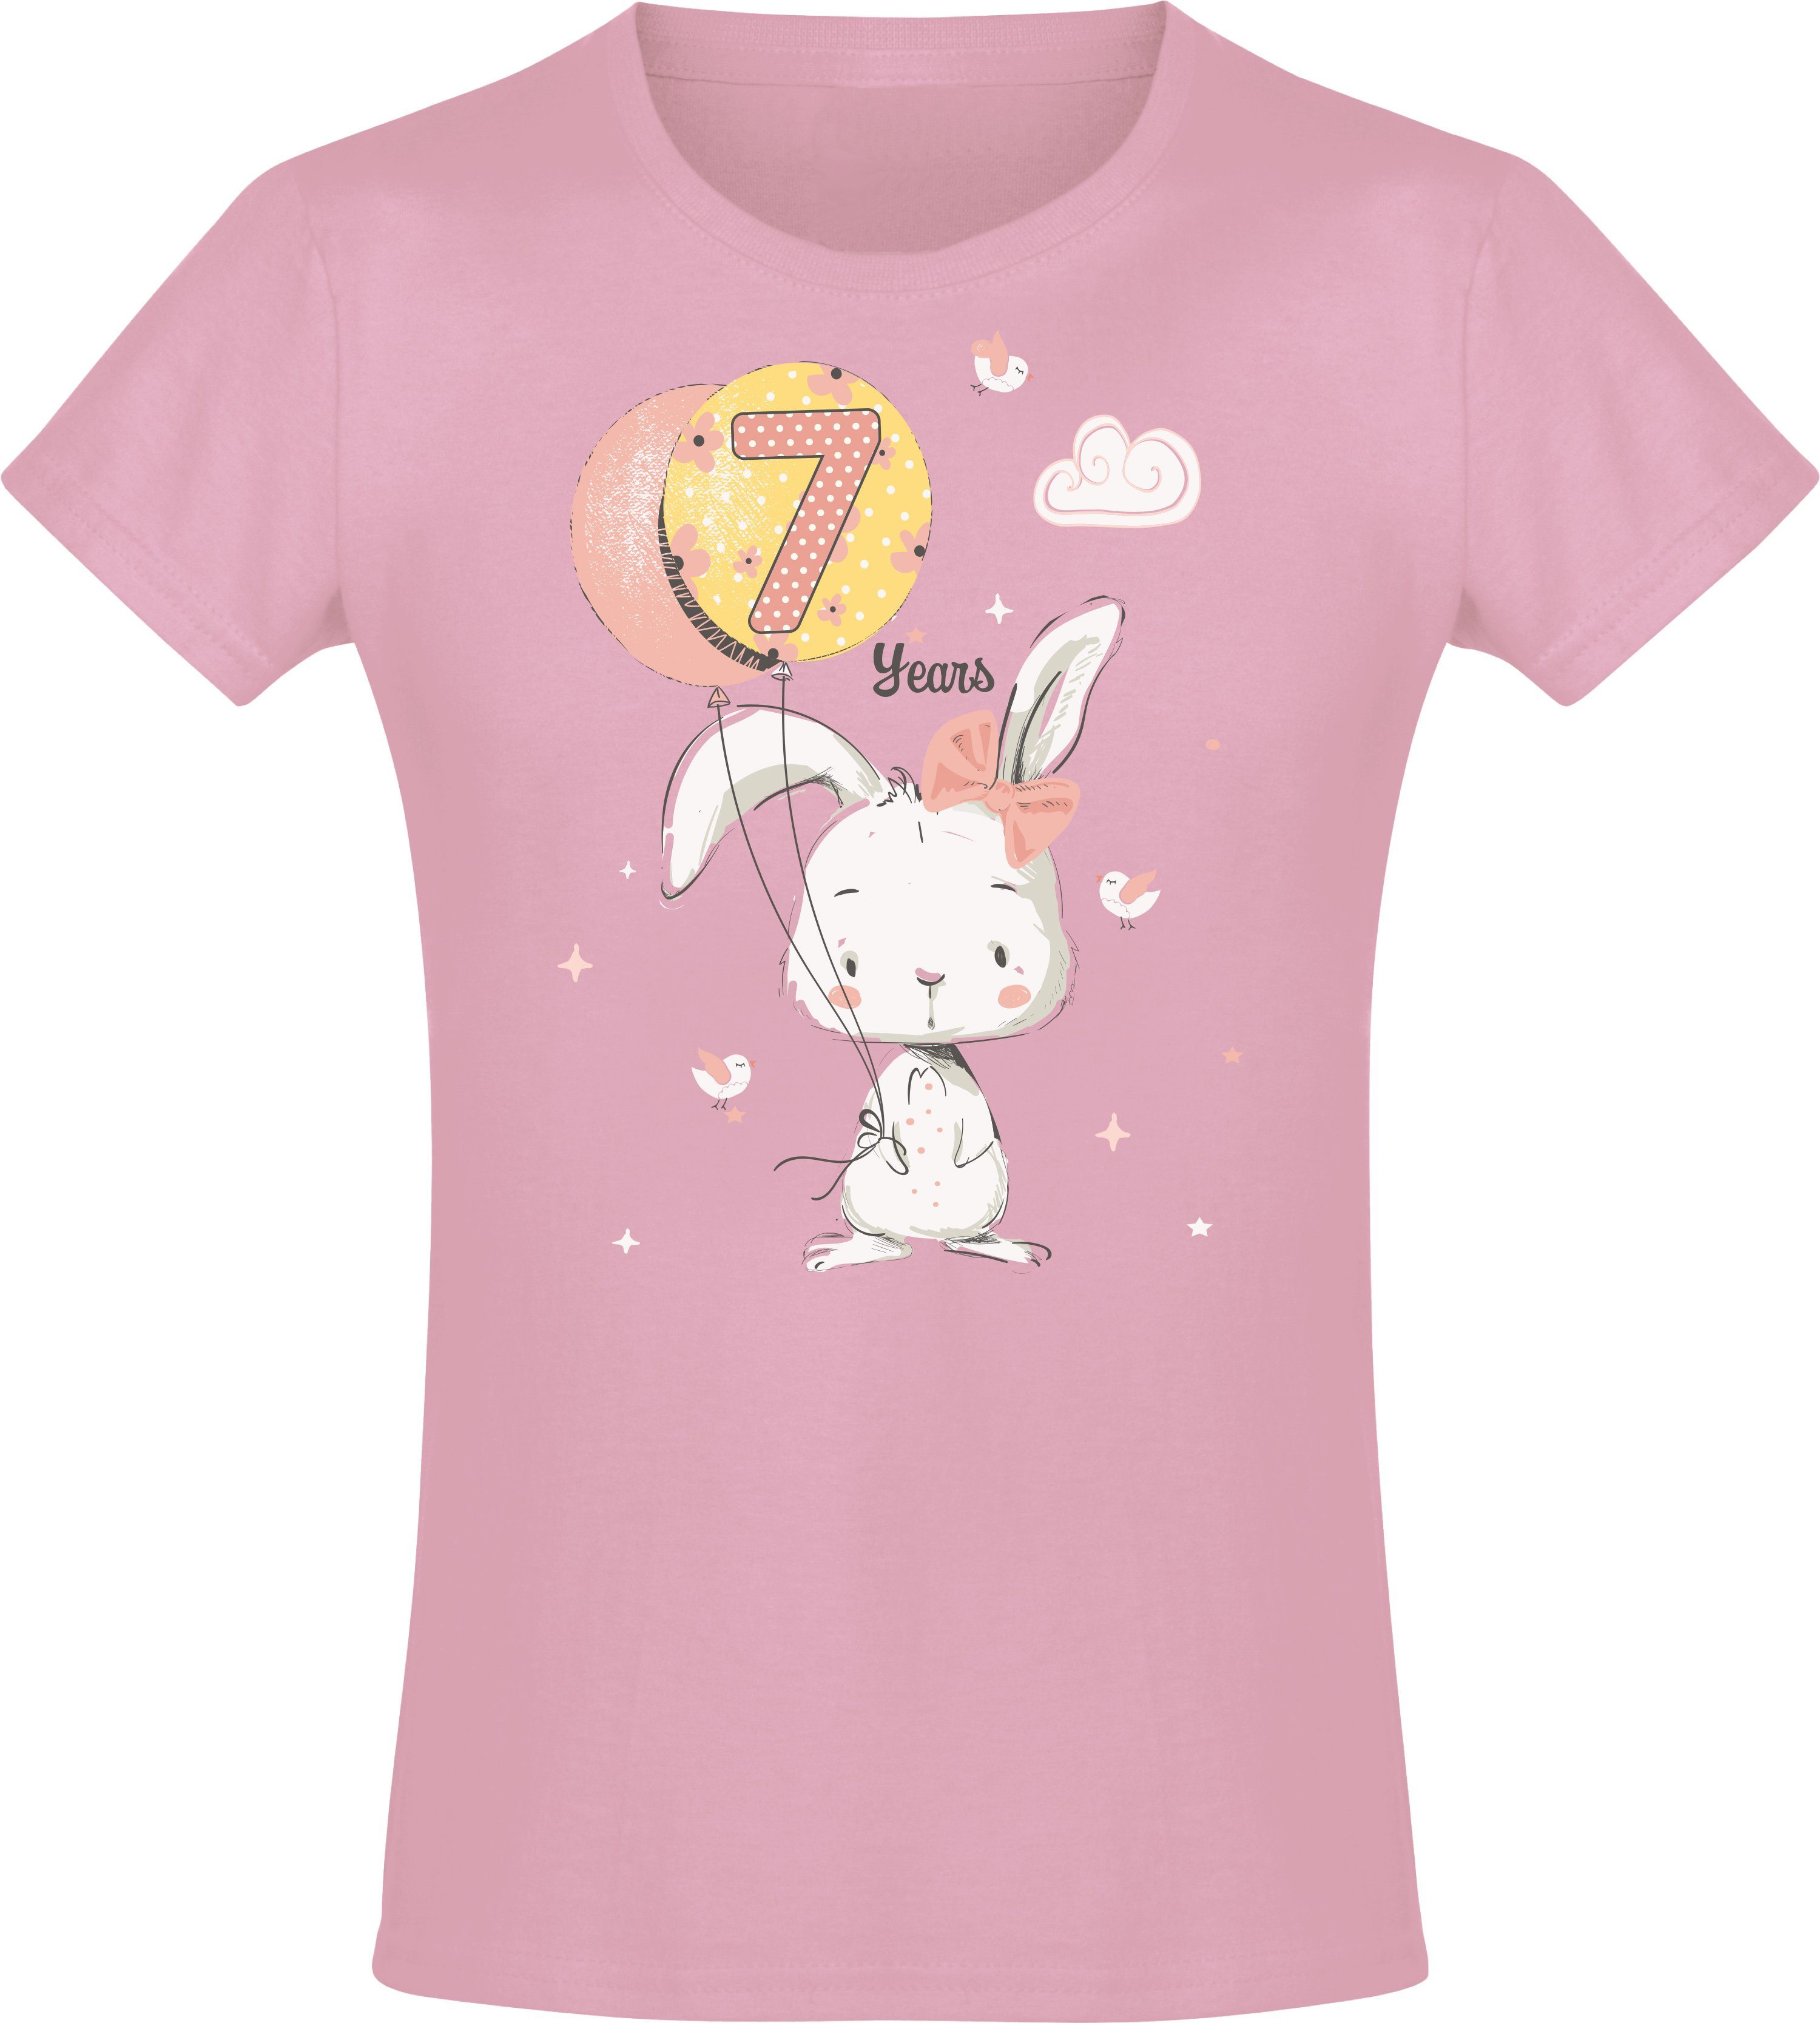 Baddery Print-Shirt Geburstagsgeschenk für Mädchen : 7 Jahre mit Hase hochwertiger Siebdruck, aus Baumwolle Light Pink